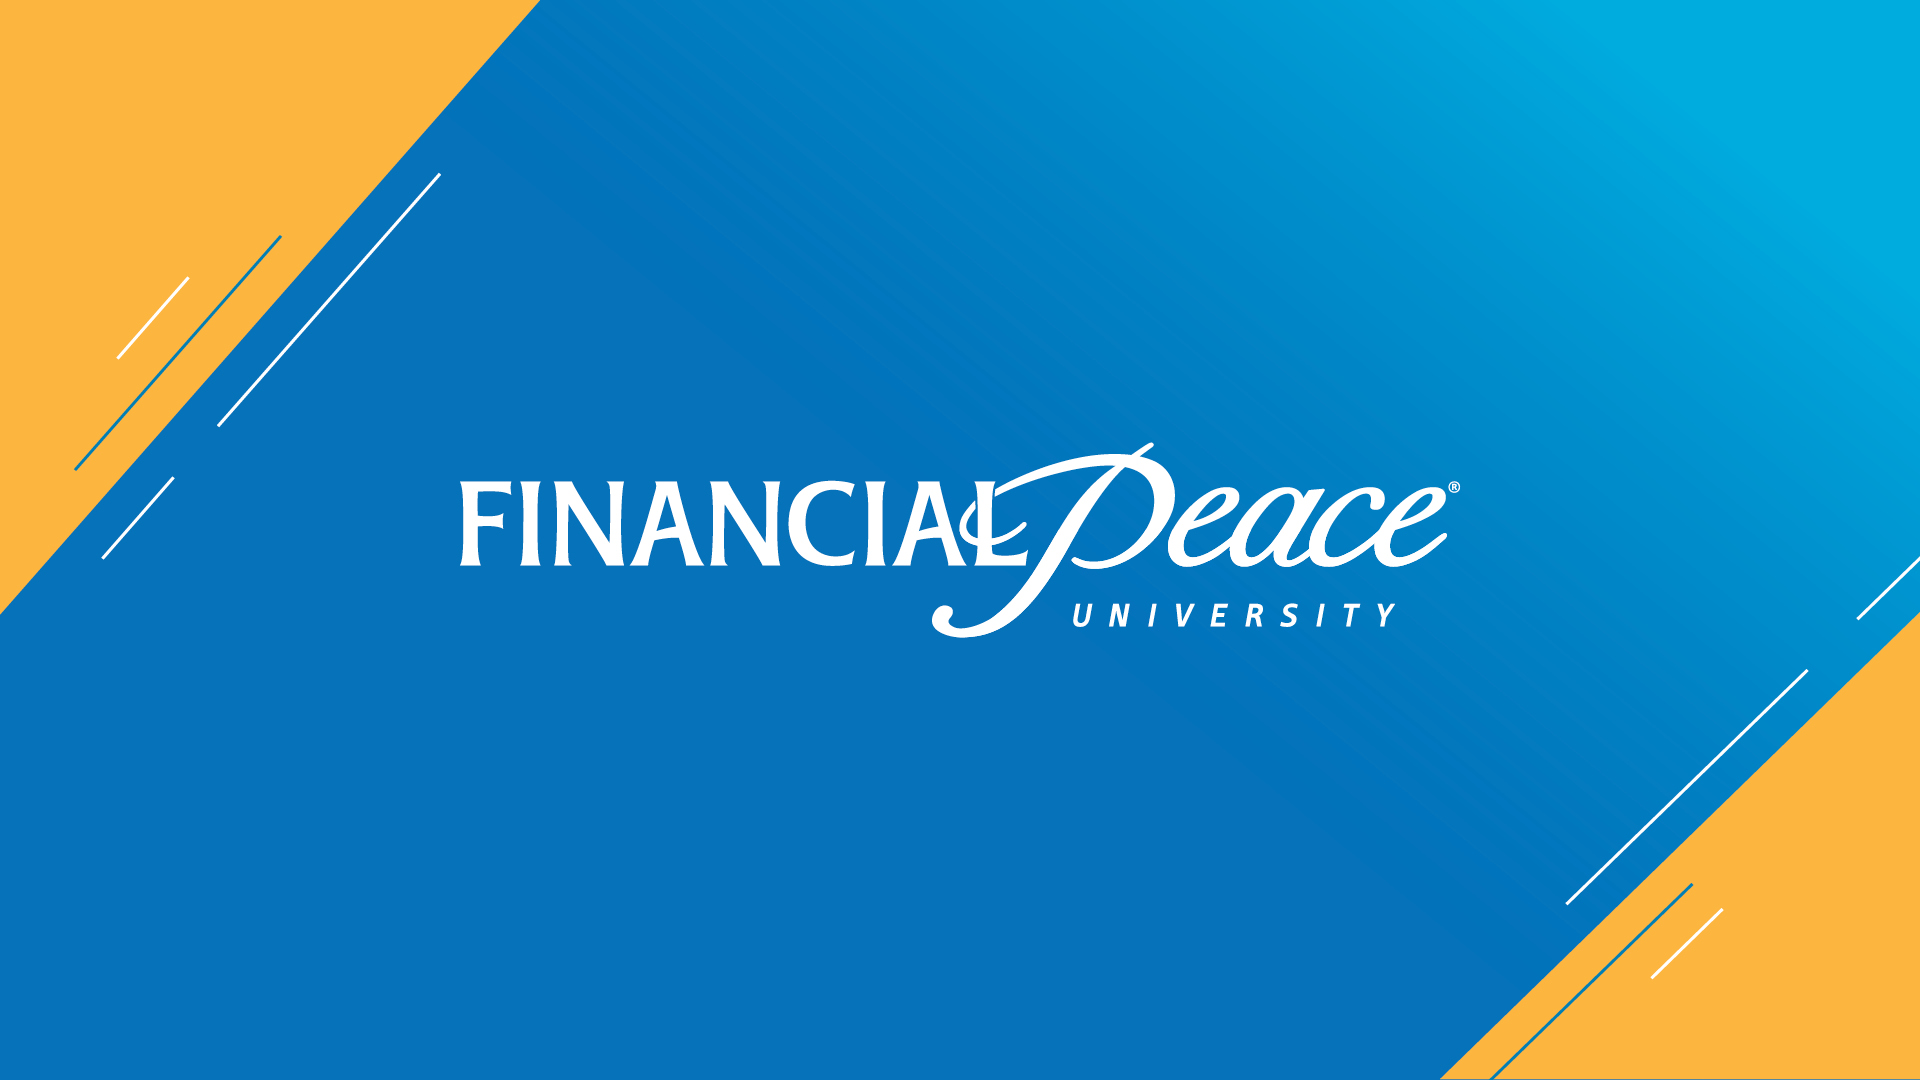 Financial Peace University
9 week class beginning September 17
Sundays | 8:50–10:20 a.m. | Oak Brook
Mondays | 7:00–9:00 p.m. | Oak Brook
 
